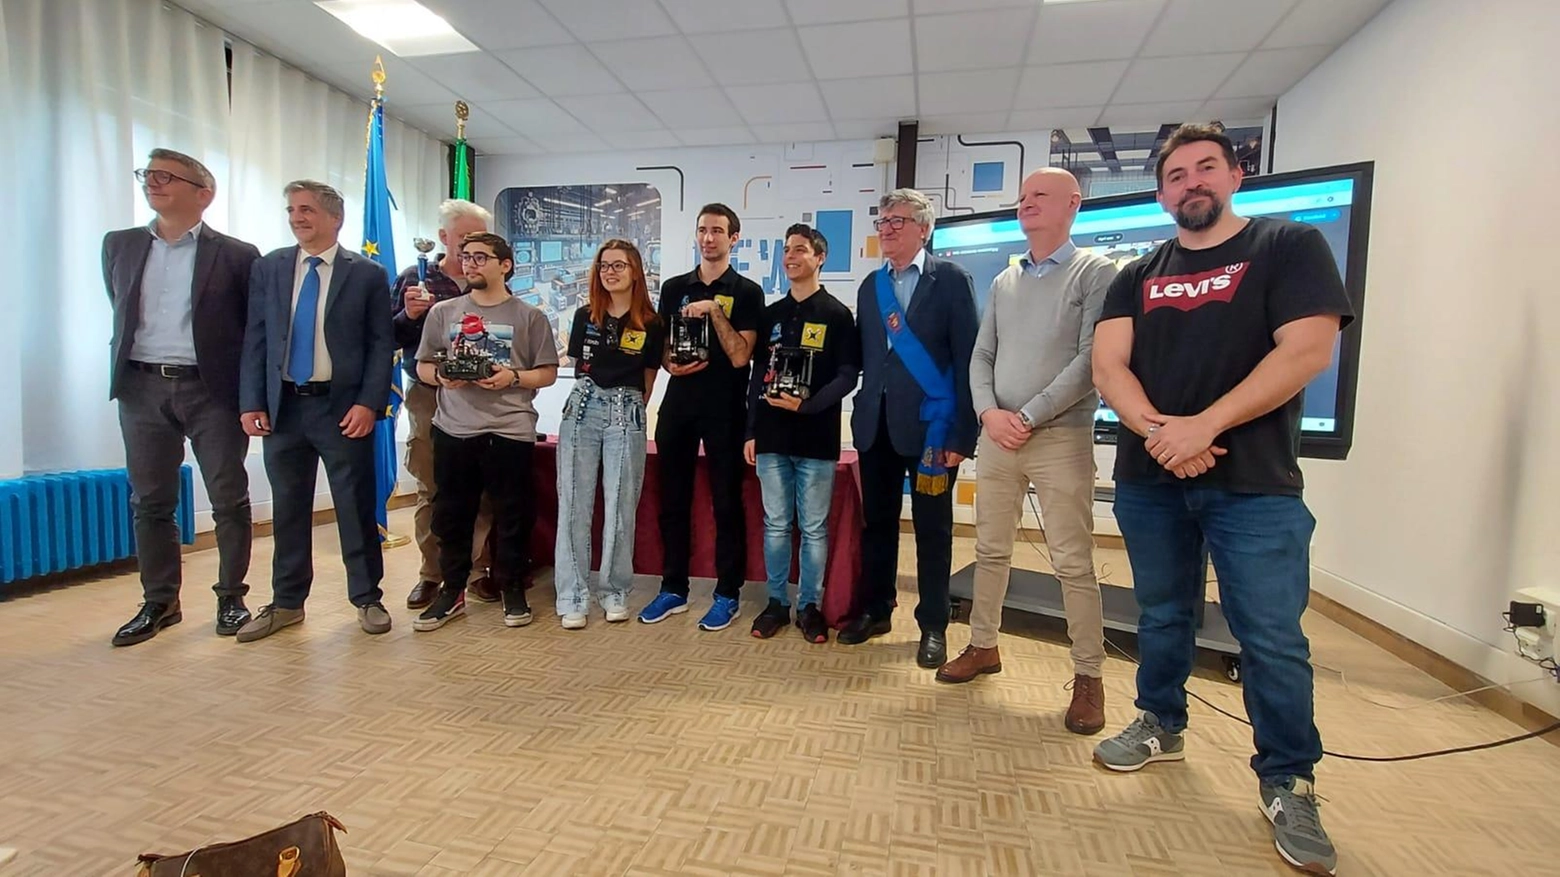 Tre studenti del Manetti-Porciatti di Grosseto trionfano ai campionati italiani di robotica, guadagnando l'accesso ai Mondiali in Olanda. Orgoglio per la scuola e inviti speciali per i campioni.